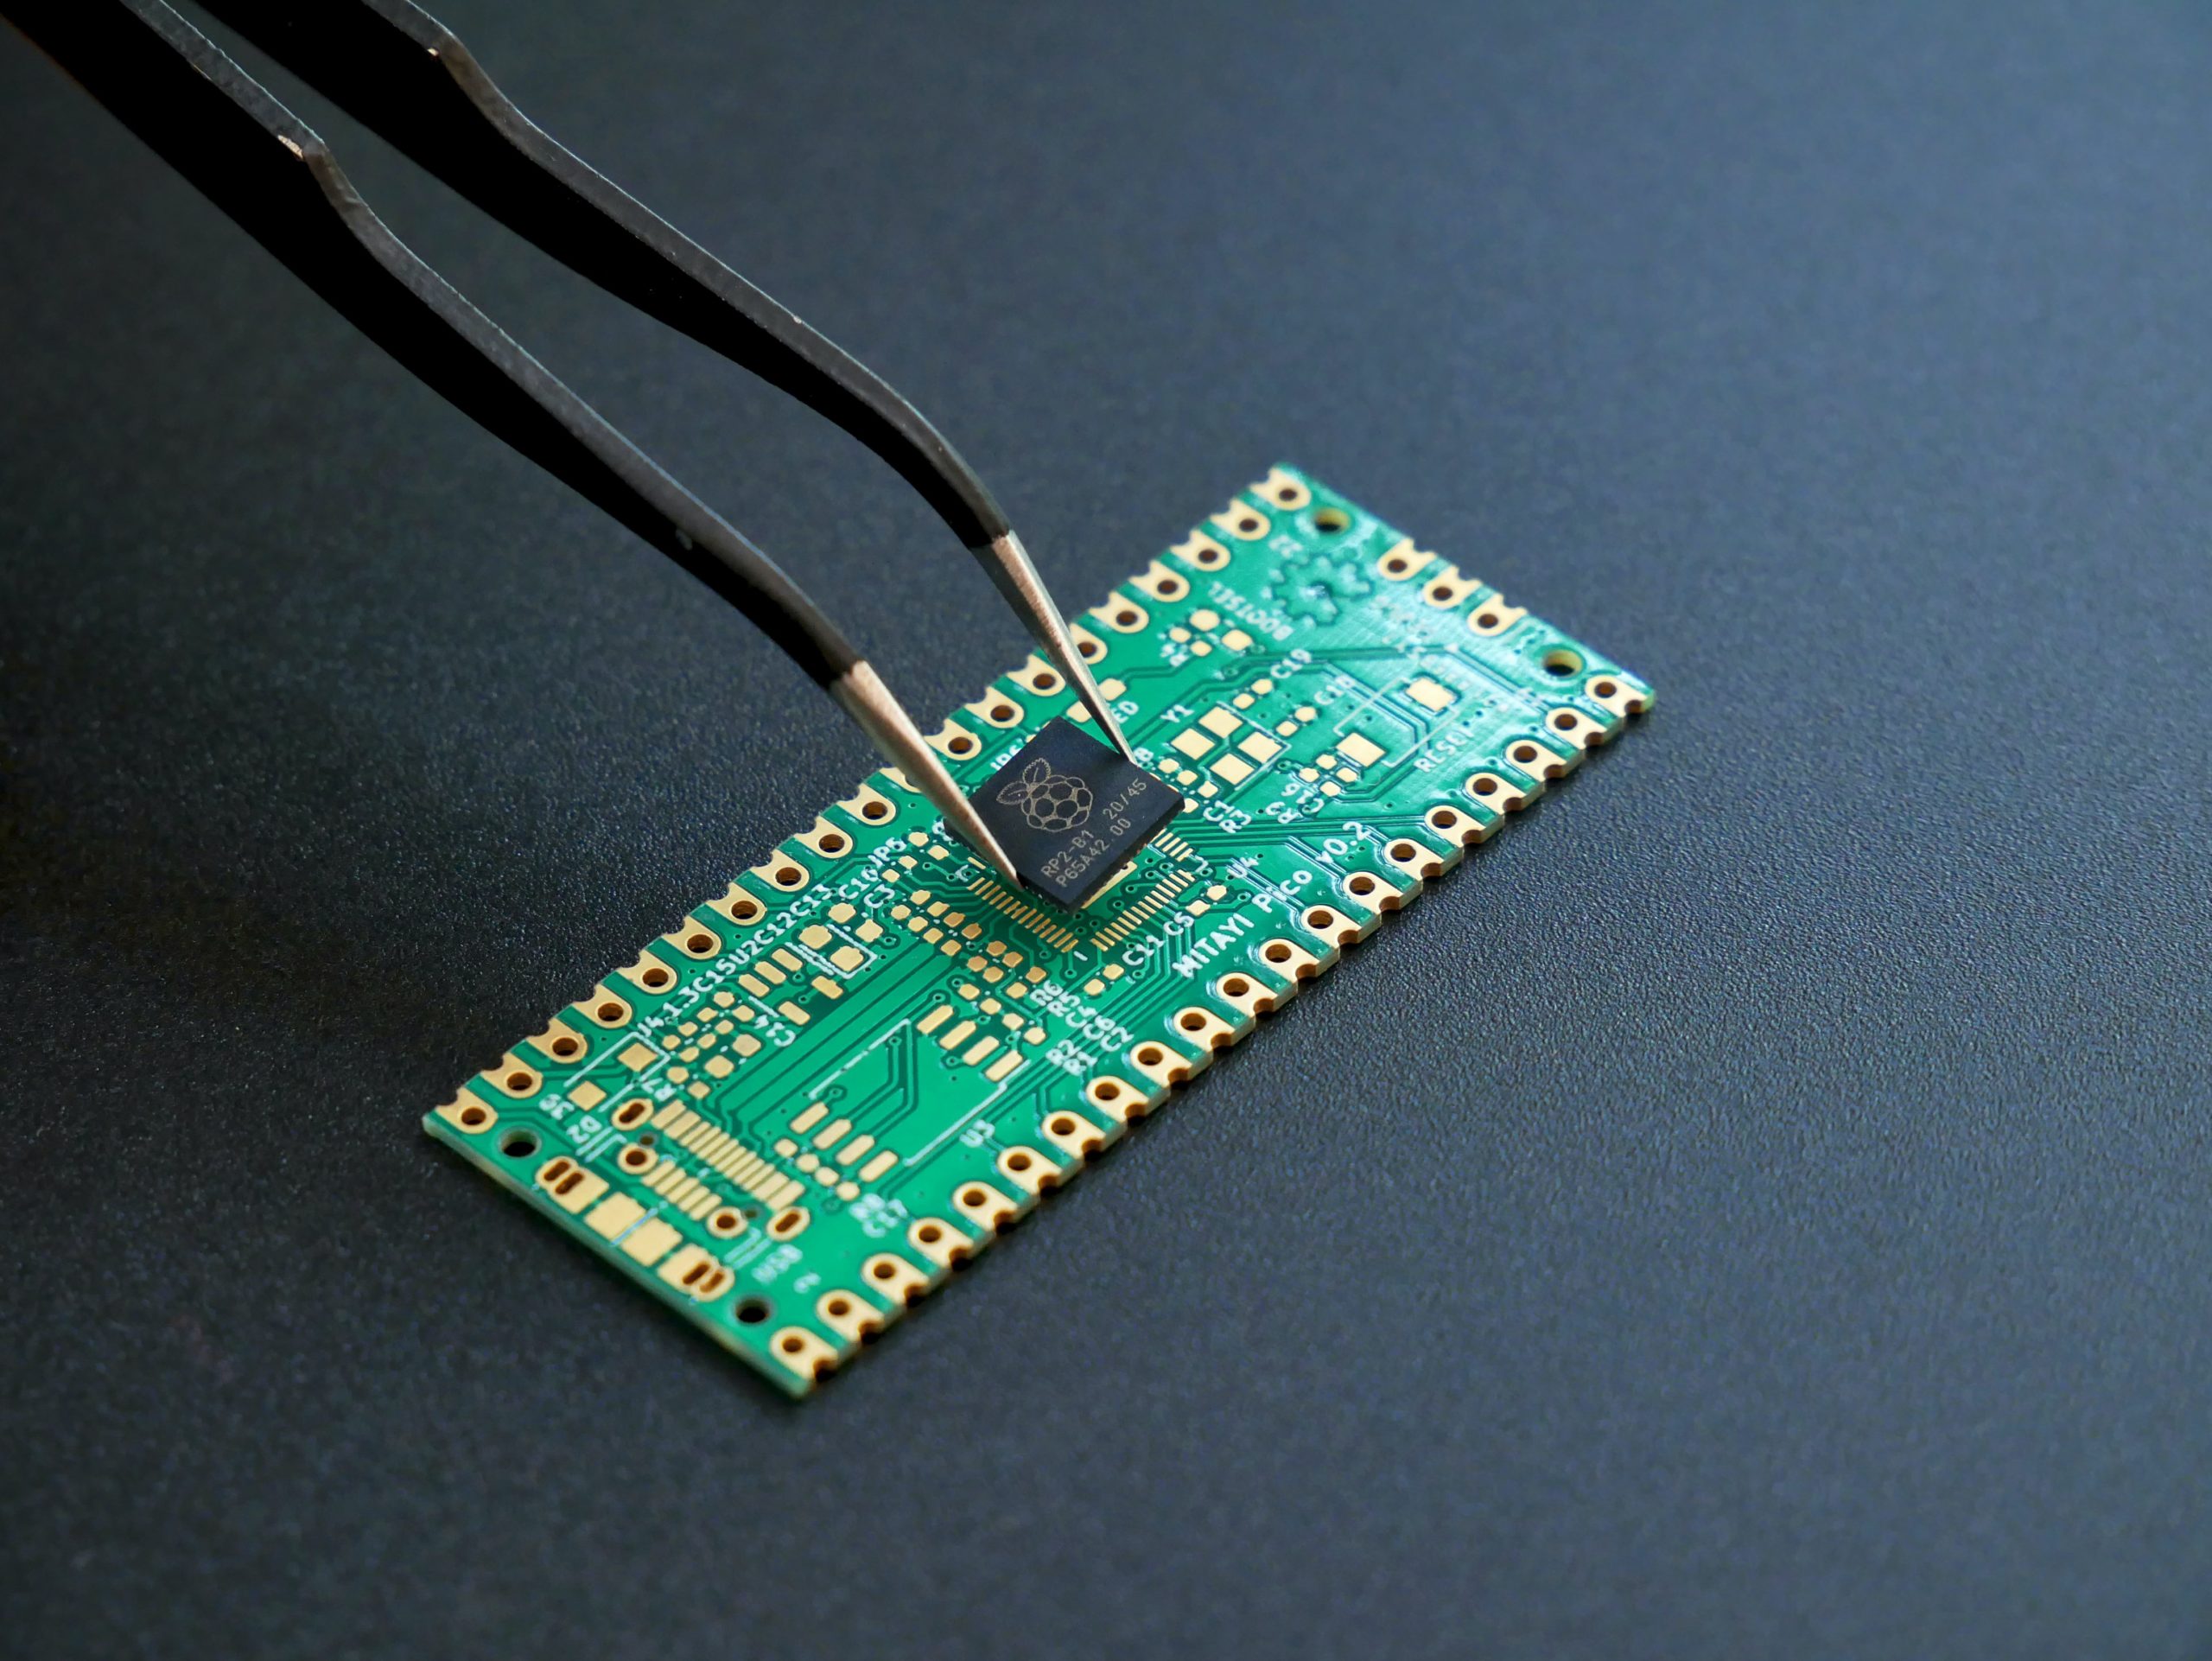 Un microcontrôleur RP2040 tenu avec une pincette au-dessus d'un PCB.